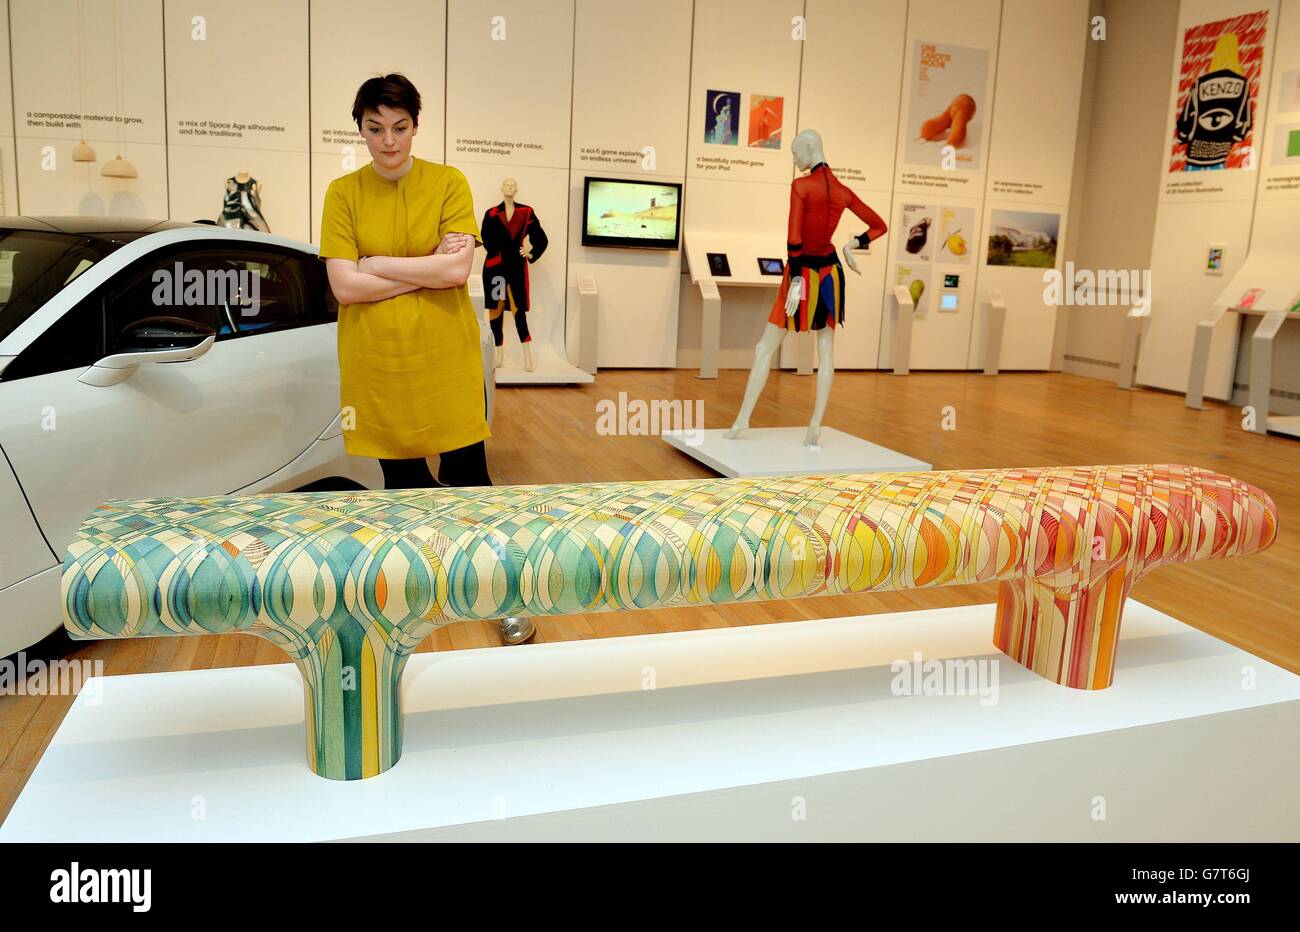 Une femme étudie un siège en mosaïque teint en bois, qui est l'un des 76 projets nominés pour le Design de l'année 2015, allant du mobilier du futur aux vêtements et voitures, exposés au Design Museum, Londres. Banque D'Images